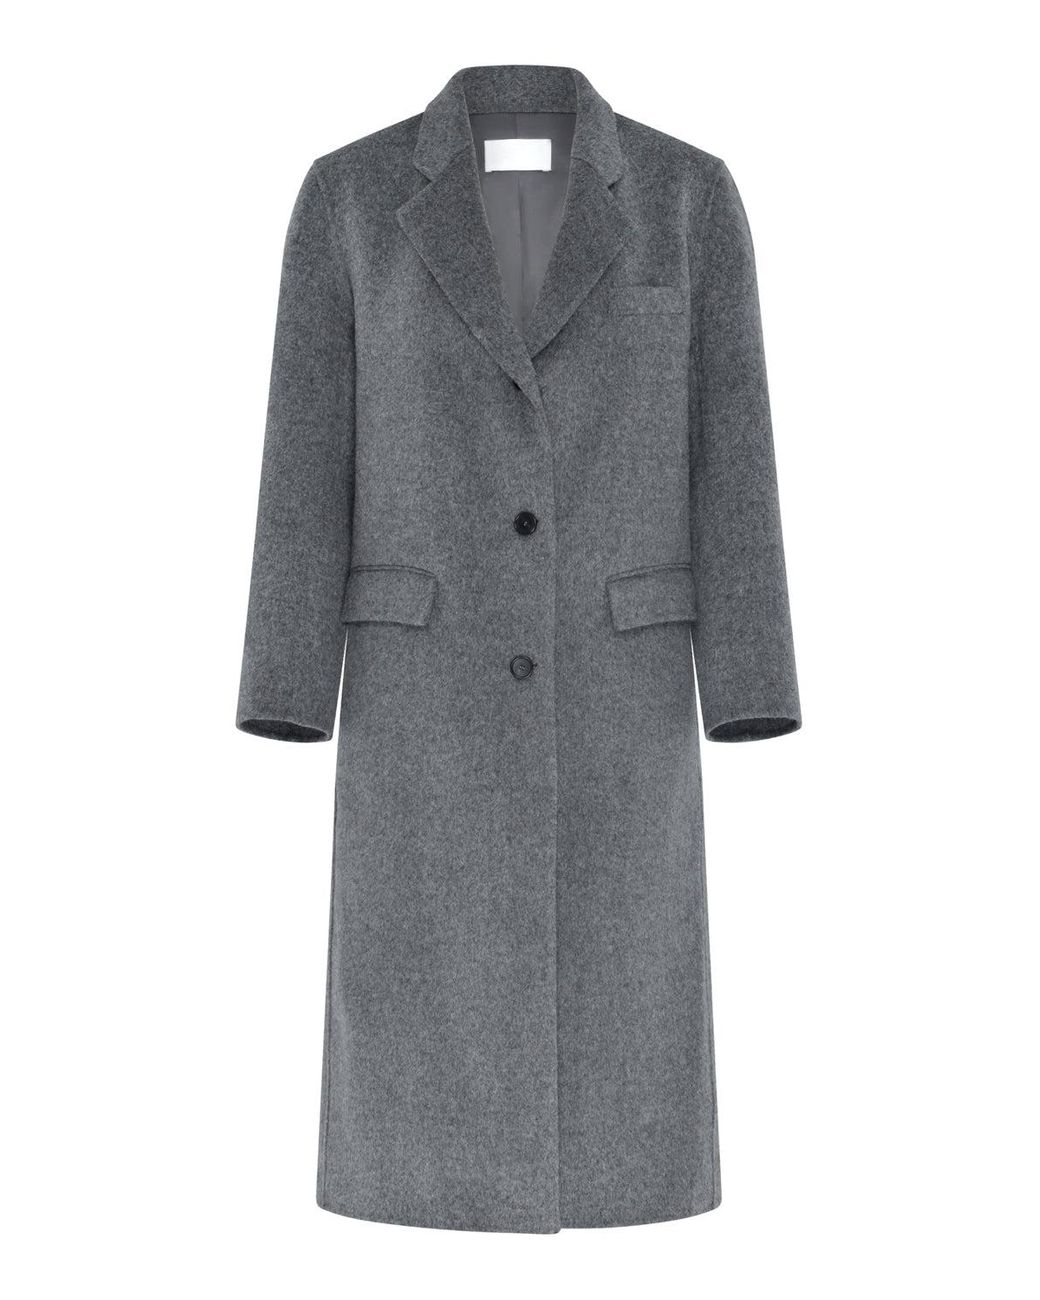 MARCÉLA LONDON Elle Tailored Wool Coat Grey in Gray | Lyst